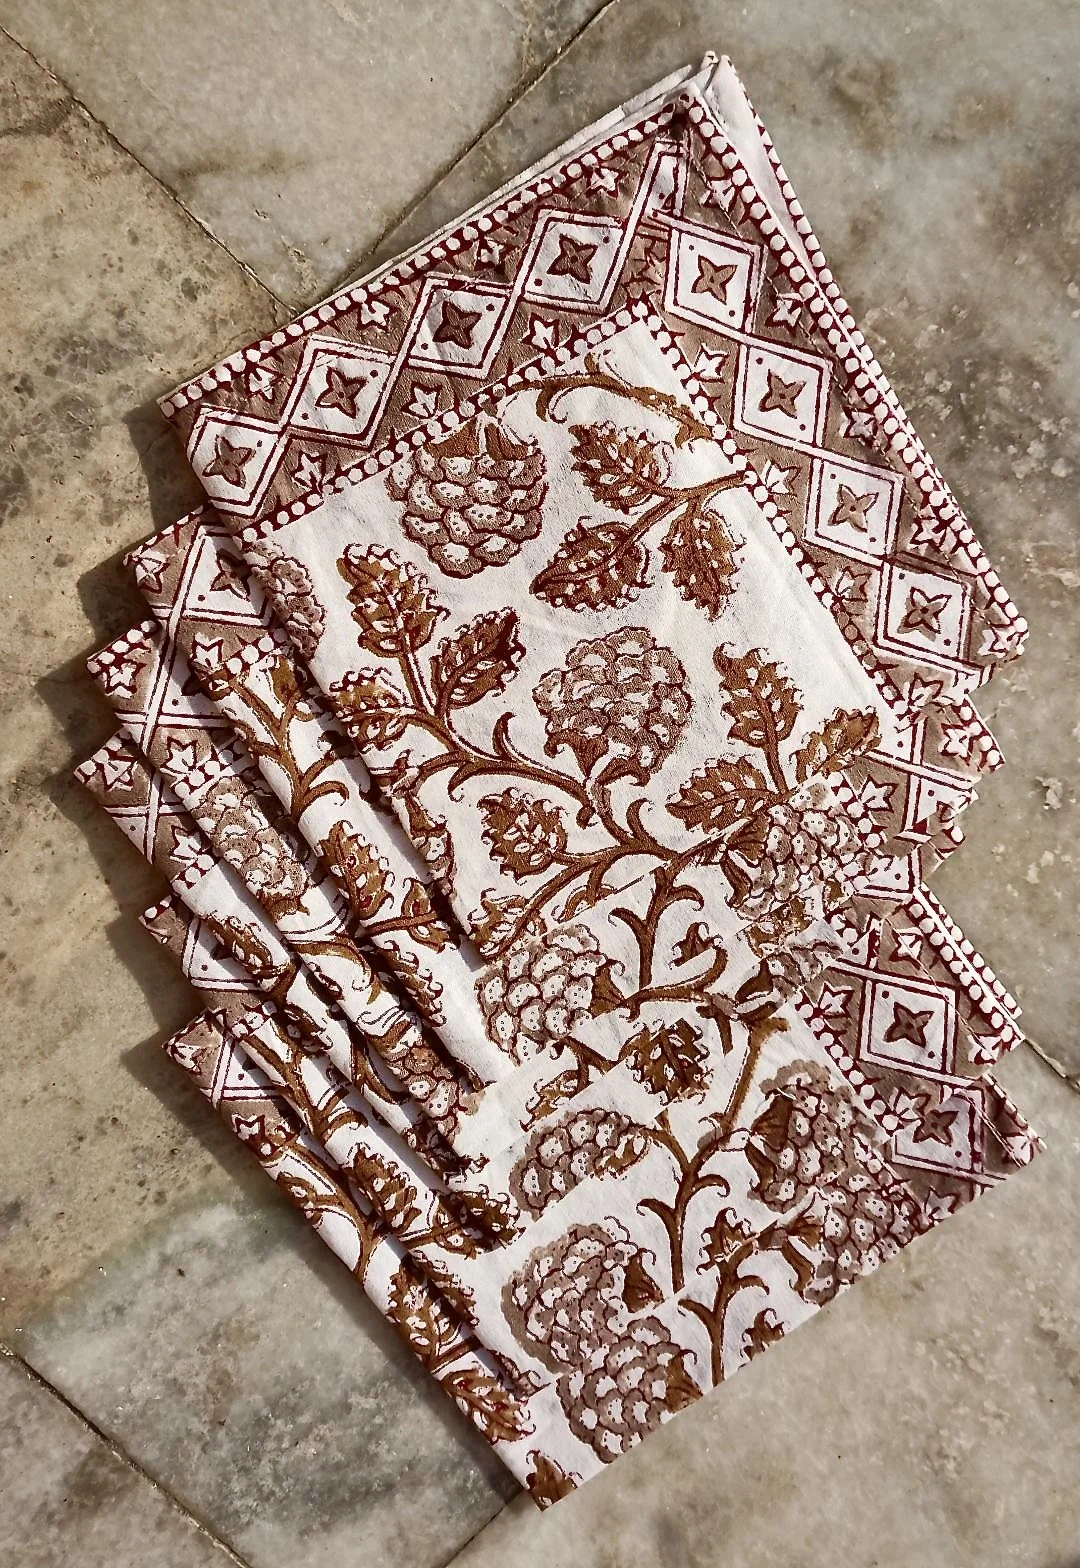 Stoffservietten Handbedruckt im 6 Stk Set mit braunen Blumen Muster